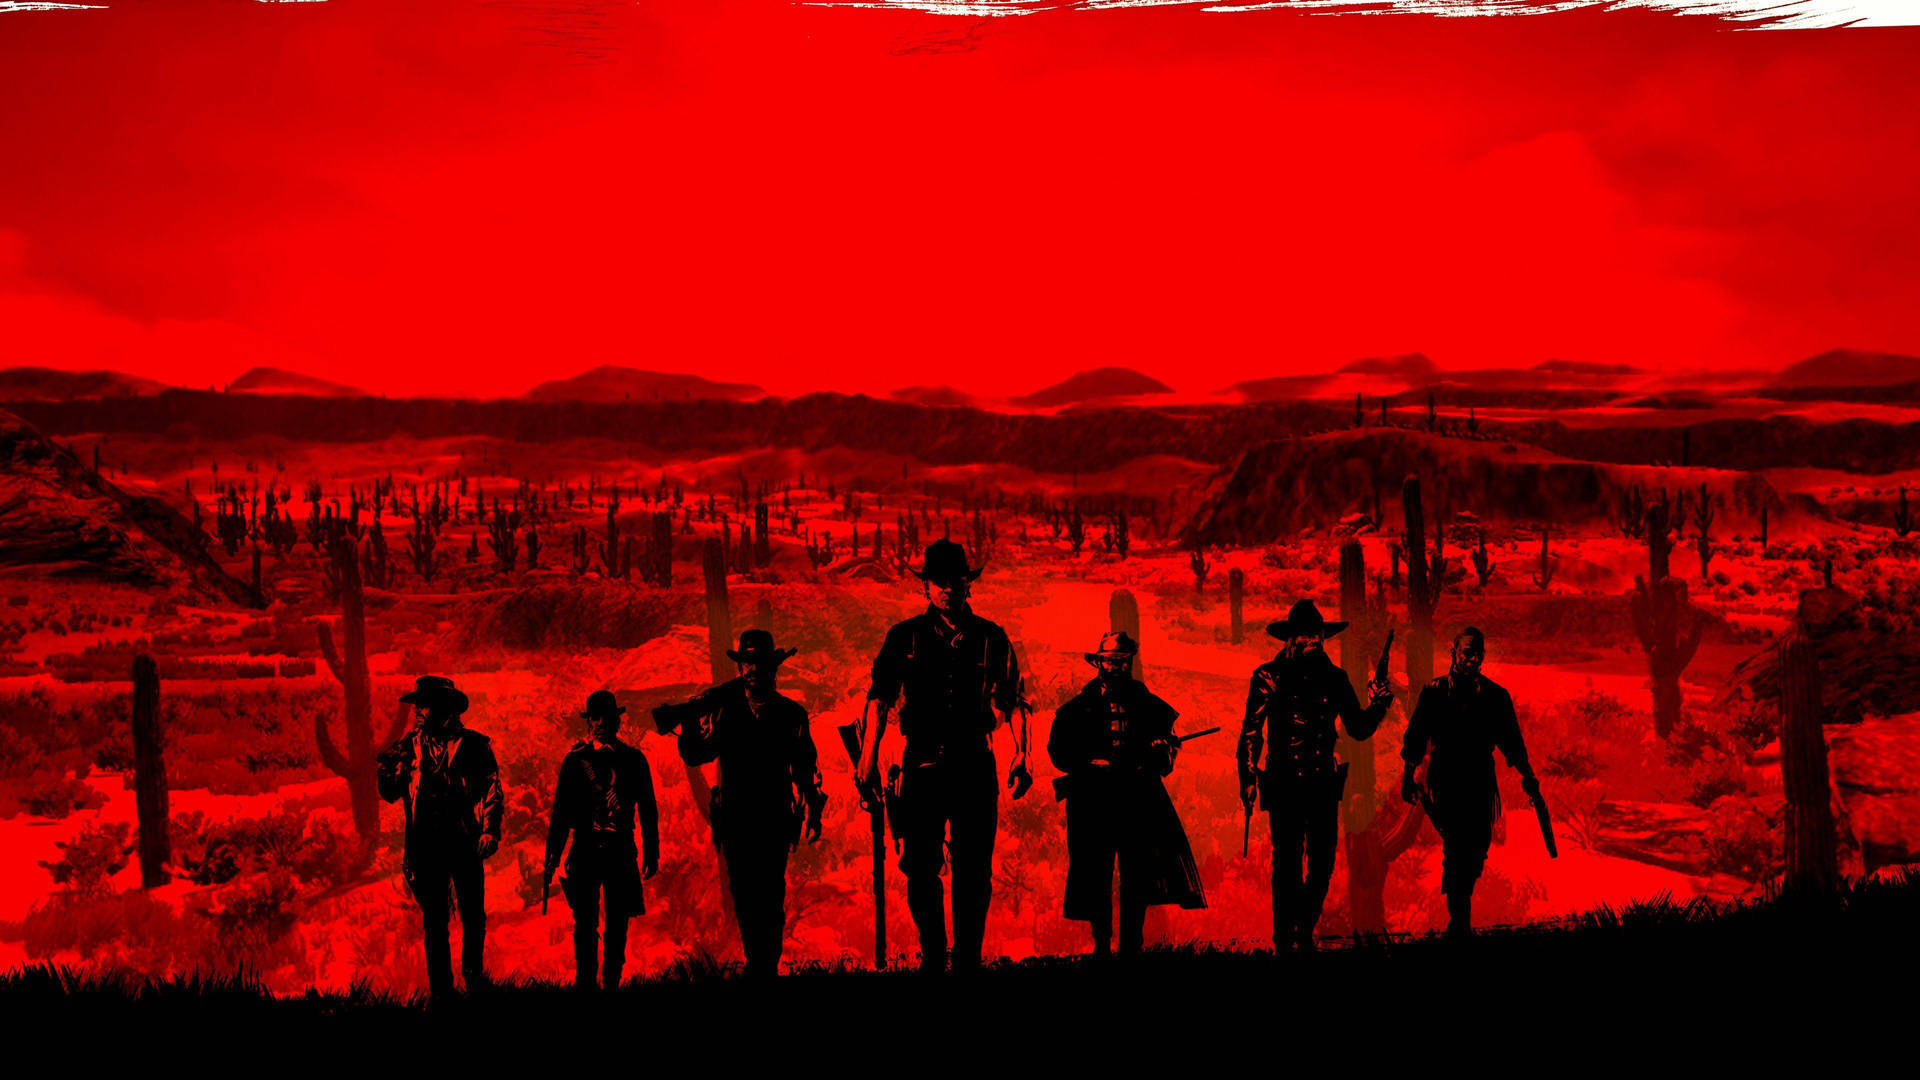 Tag op på en vild vest-eventyr med Red Dead Redemption 2. Wallpaper